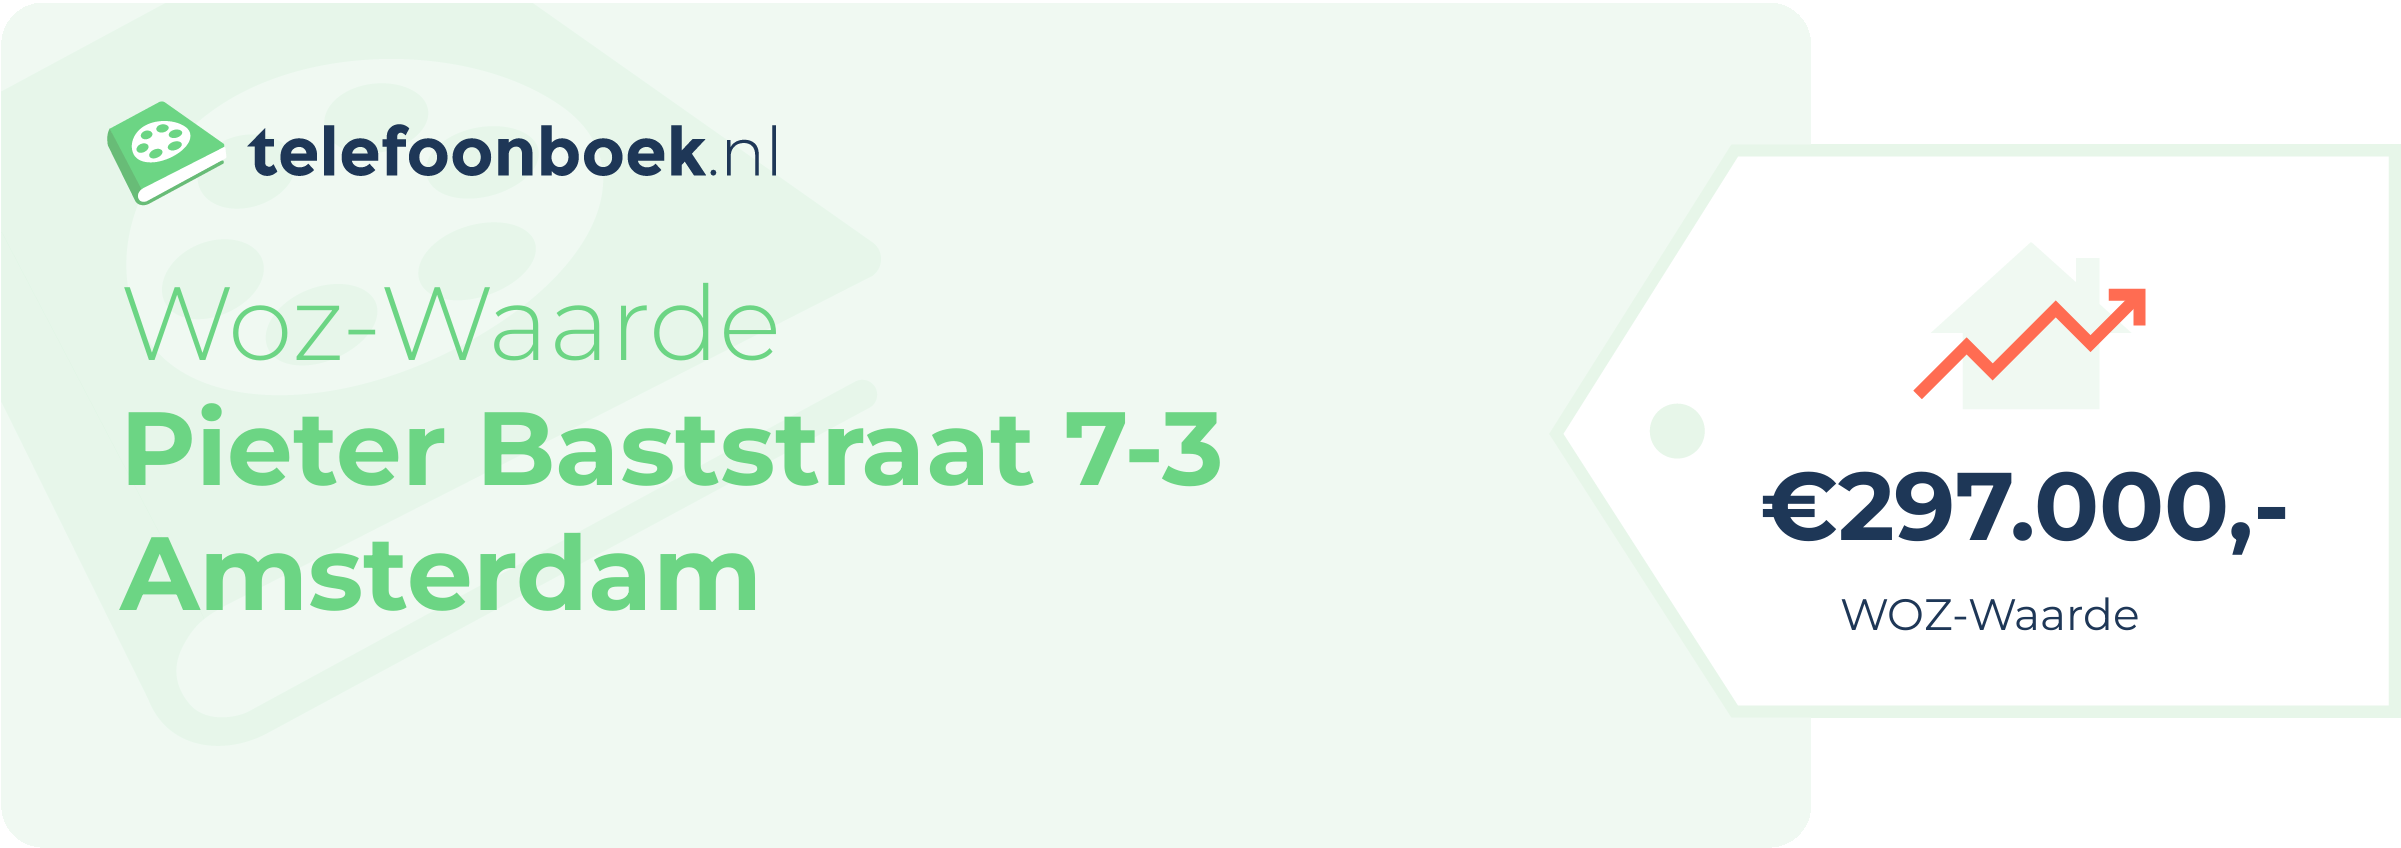 WOZ-waarde Pieter Baststraat 7-3 Amsterdam